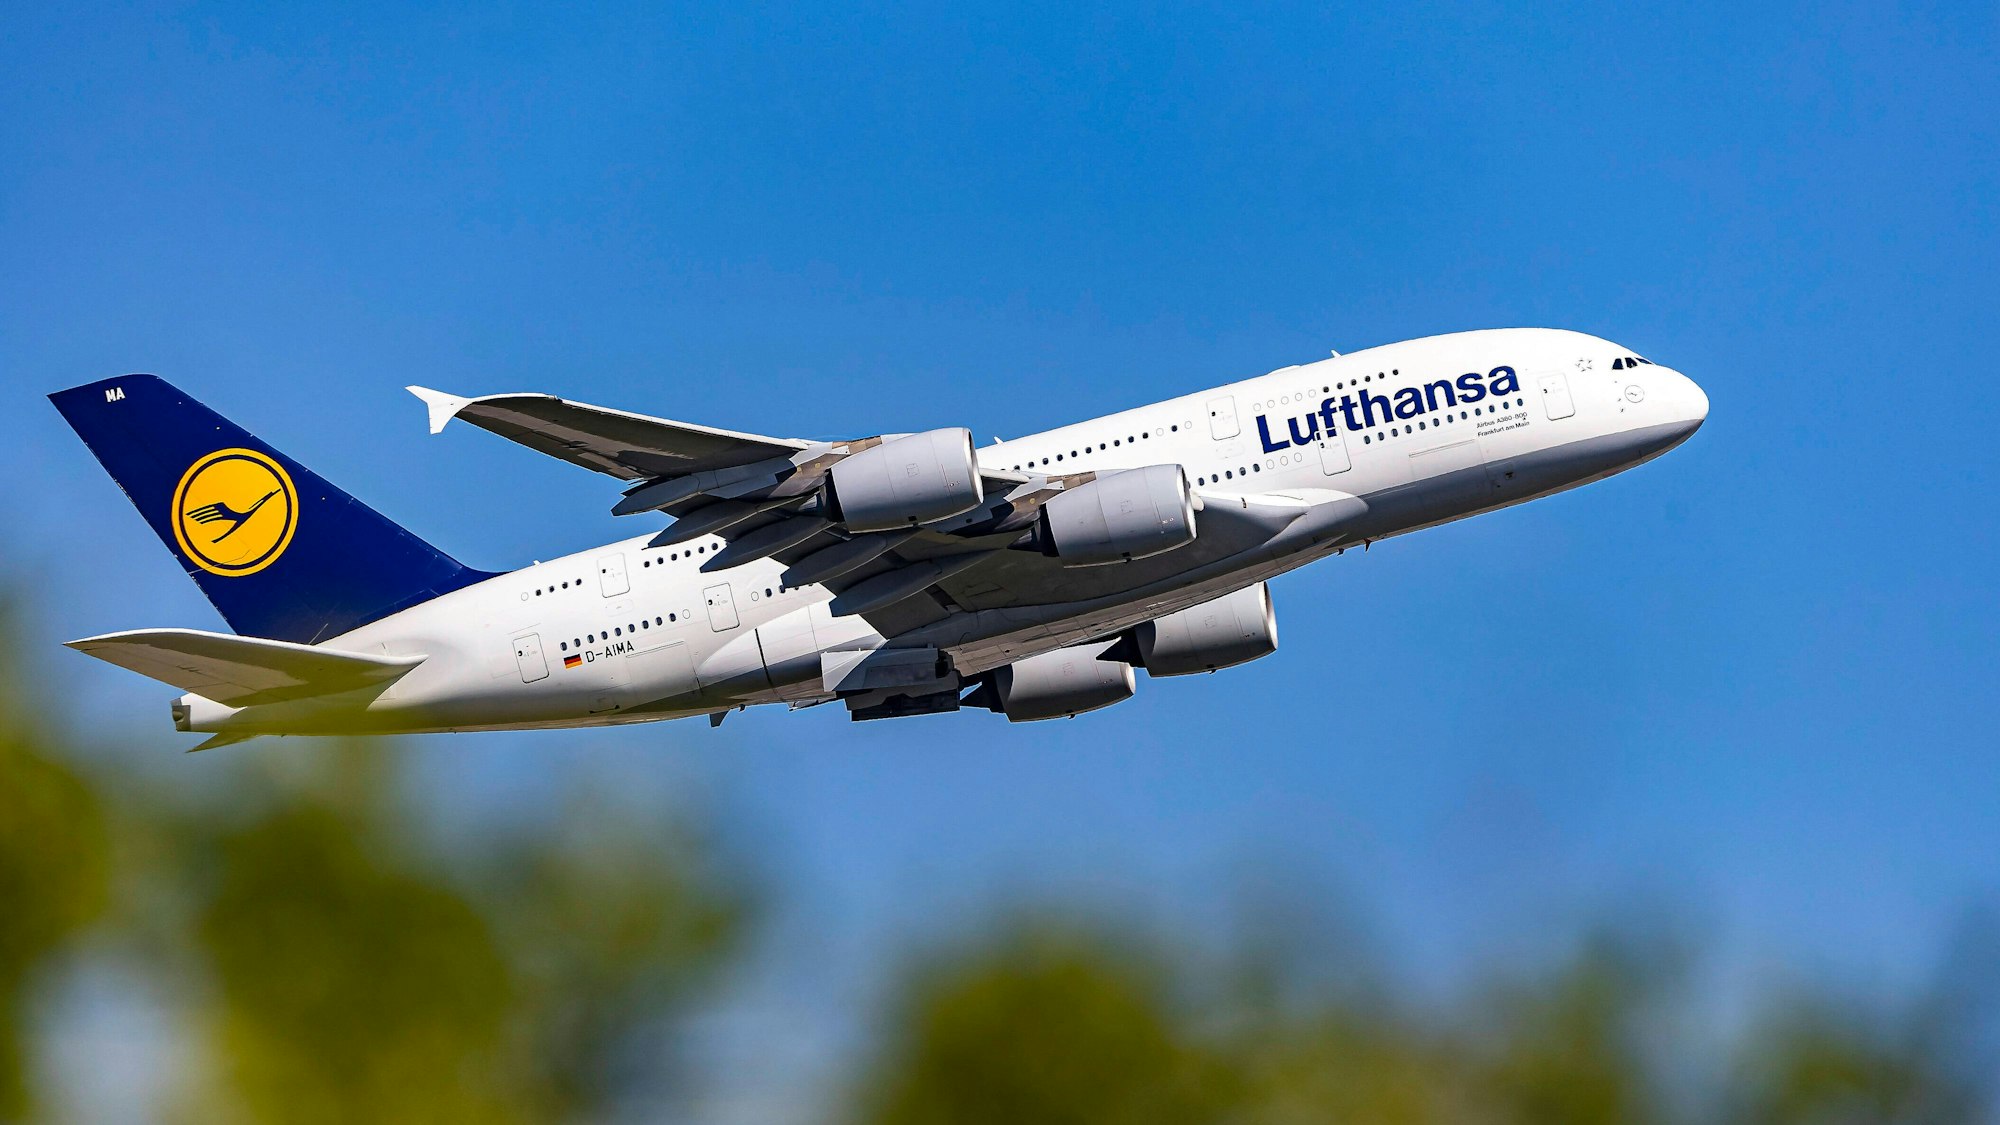 Ein Airbus A380 der Lufthansa kurz nach dem Start im Steigflug. Das größte Passagierflugzeug der Welt ist in weiß, blau und gelb lackiert. (Symbolbild)